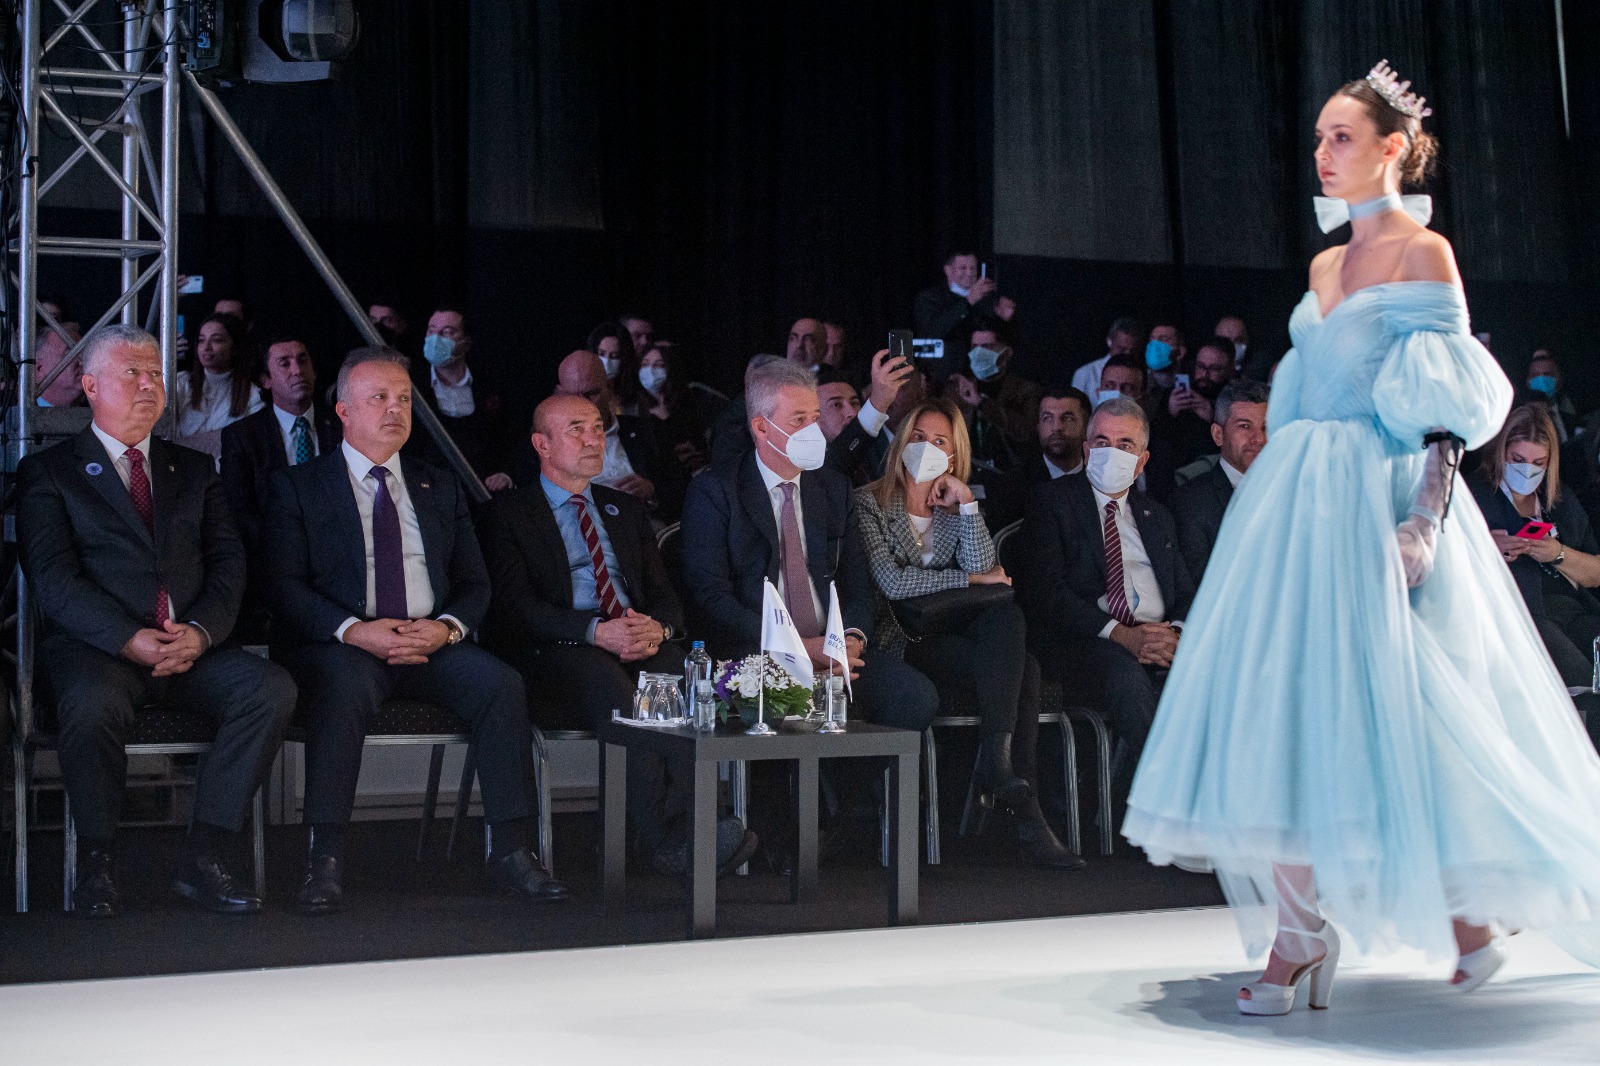 Başkan Tunç Soyer 15. IF Wedding Fashion İzmir’in açılışında konuştu: “Üretim ve ihracatımıza çok önemli katkılar sunacak”